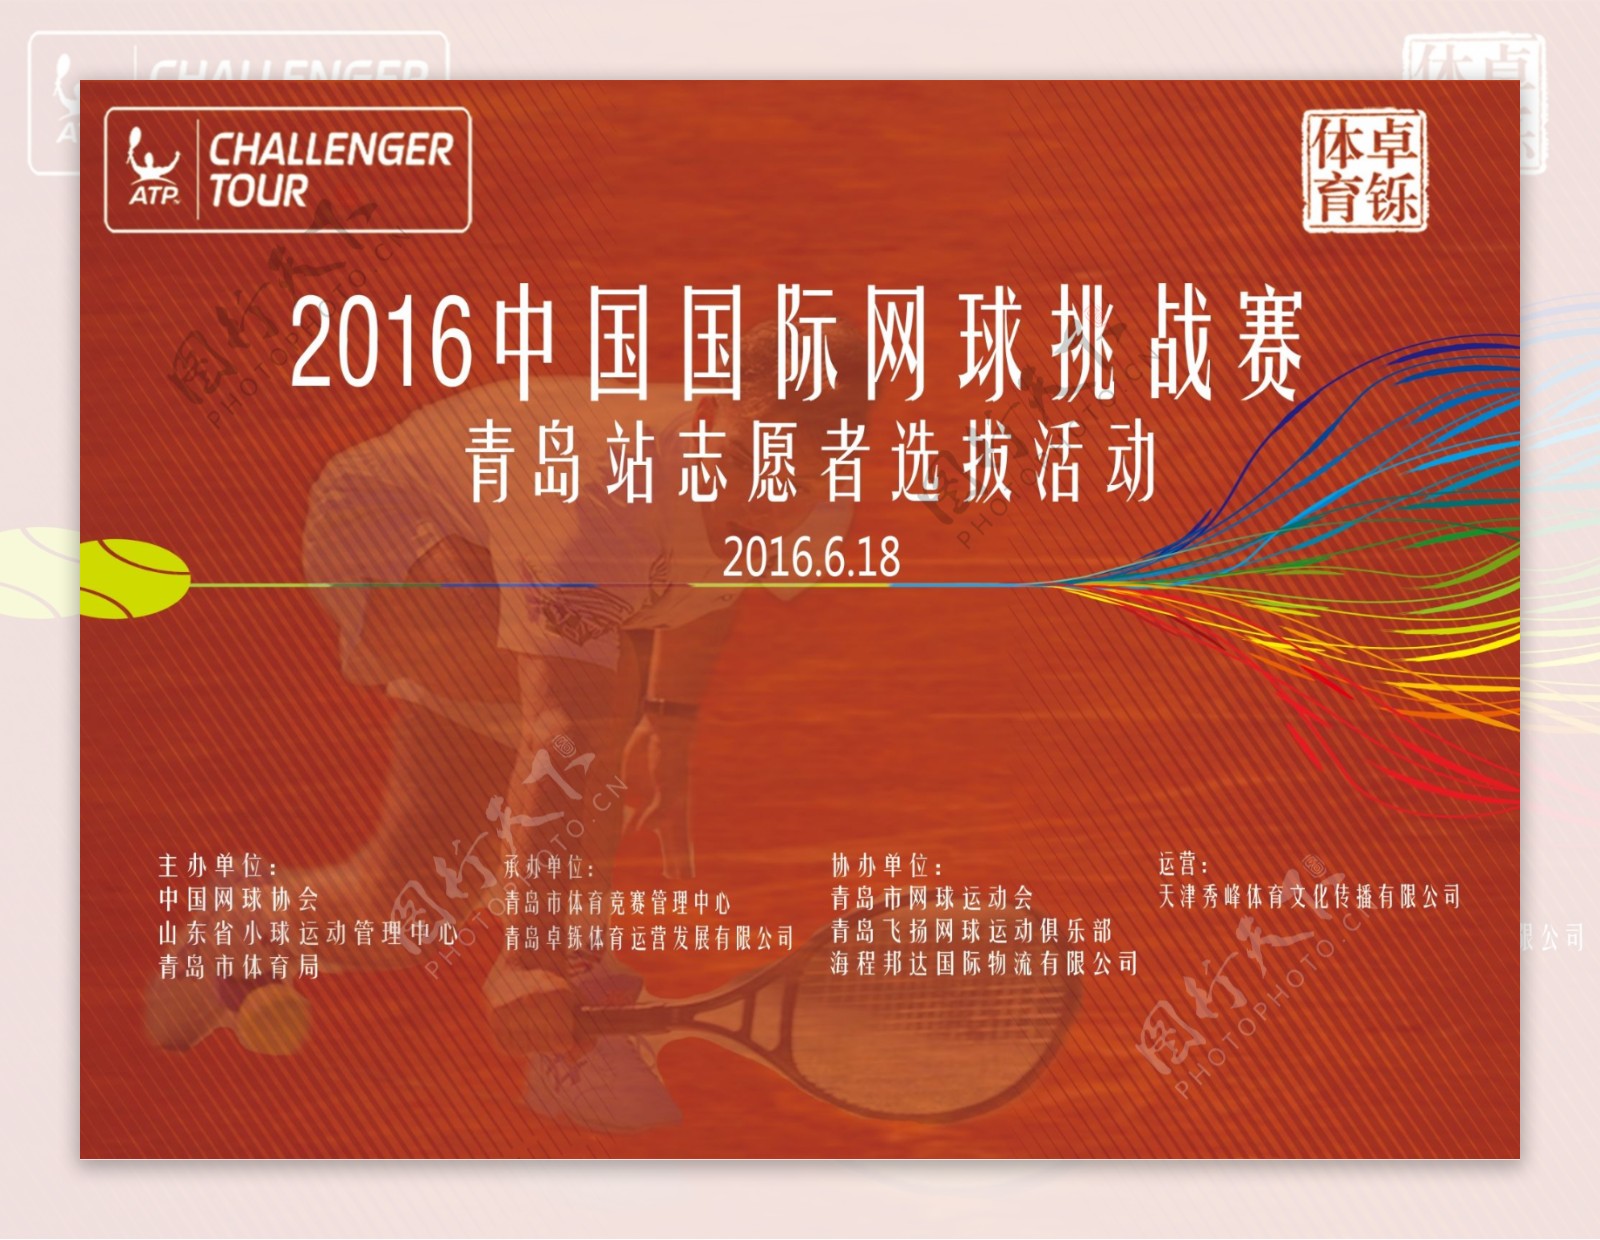 中国国际网球挑战赛青年志愿者选拨活动